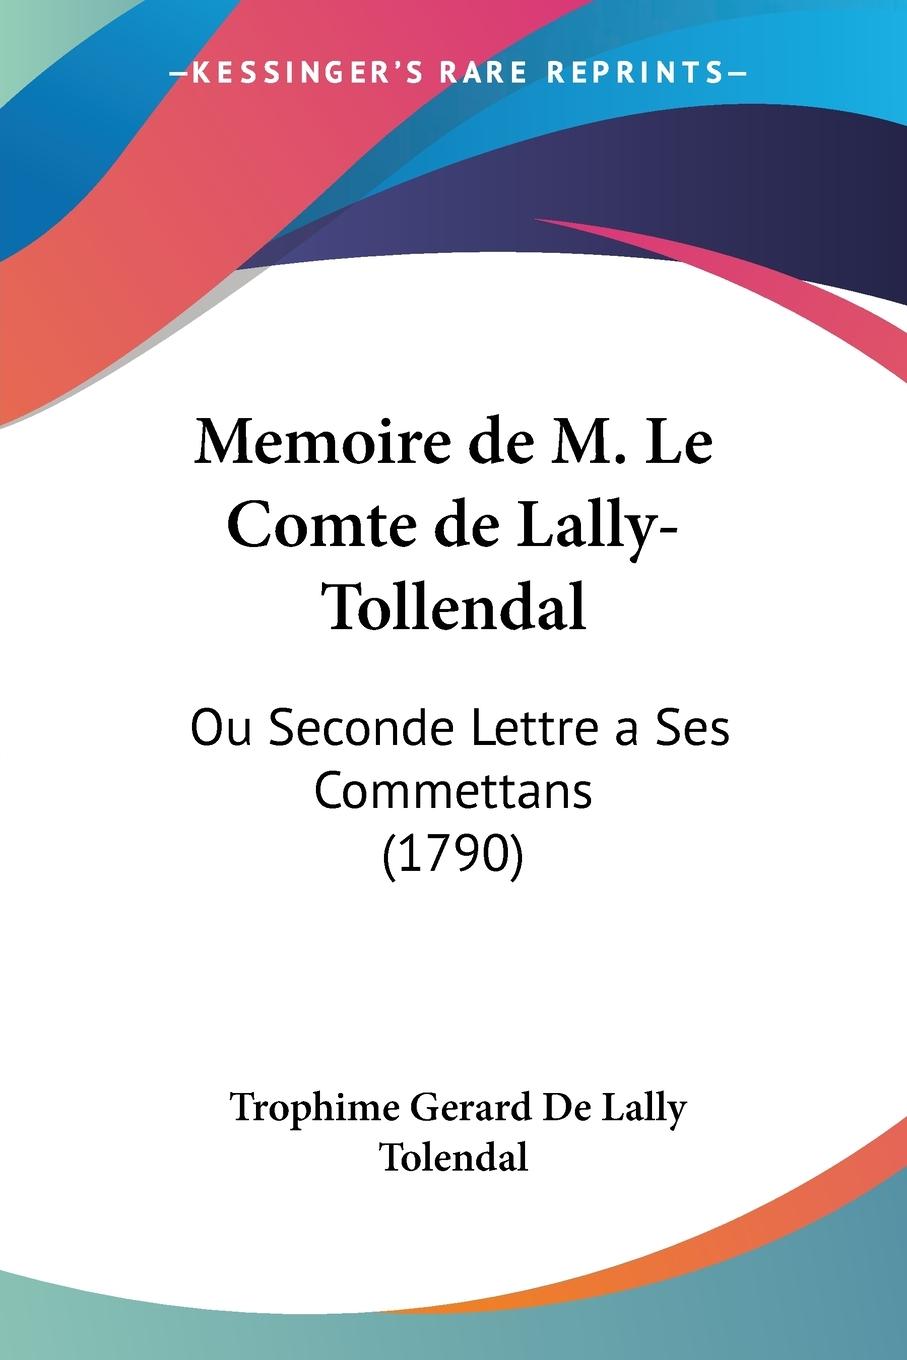 Memoire de M. Le Comte de Lally-Tollendal - De Lally Tolendal, Trophime Gerard